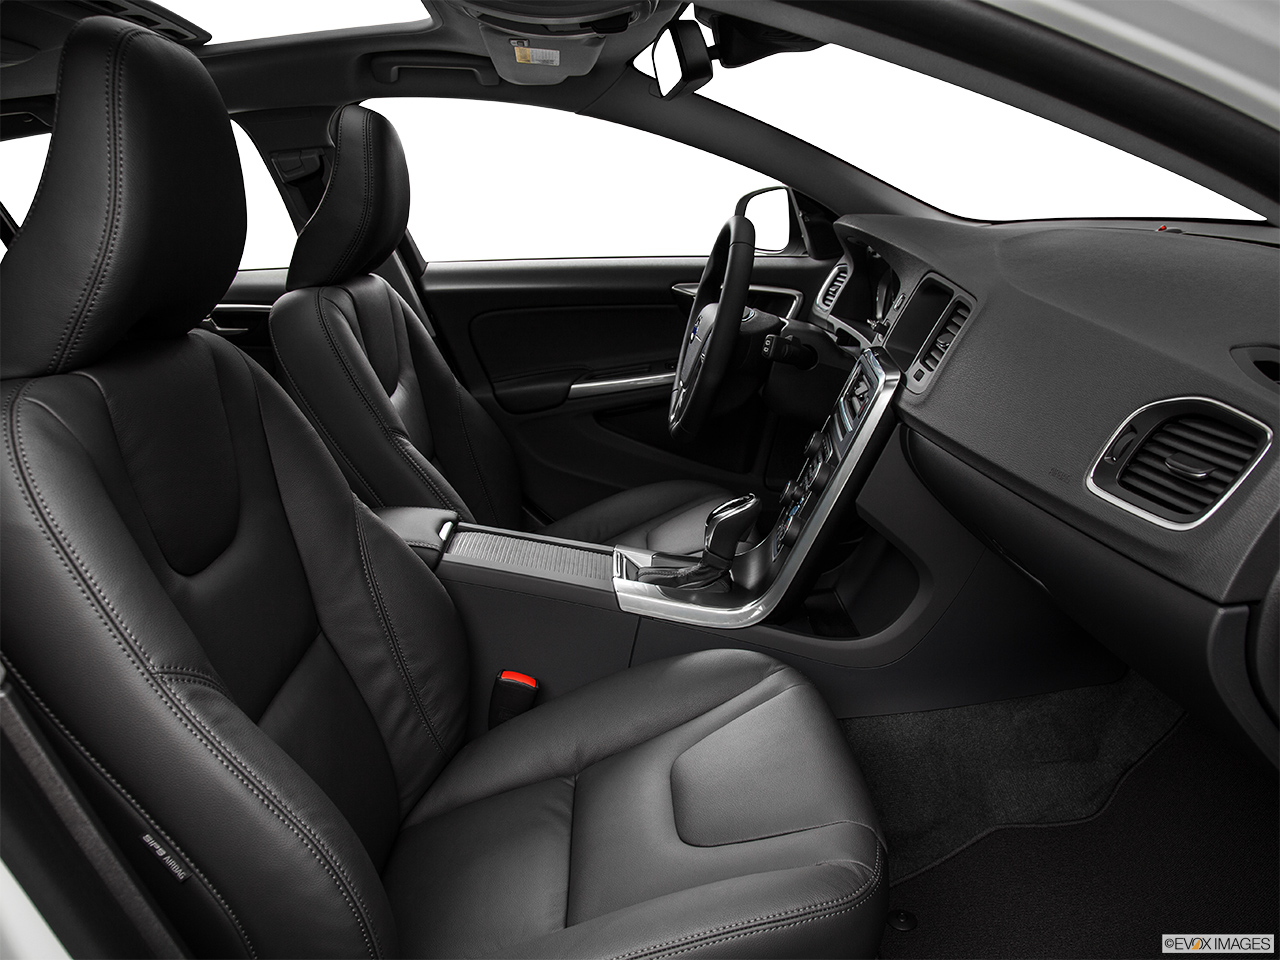 2015 Volvo V60 Premier Plus Passenger seat. 